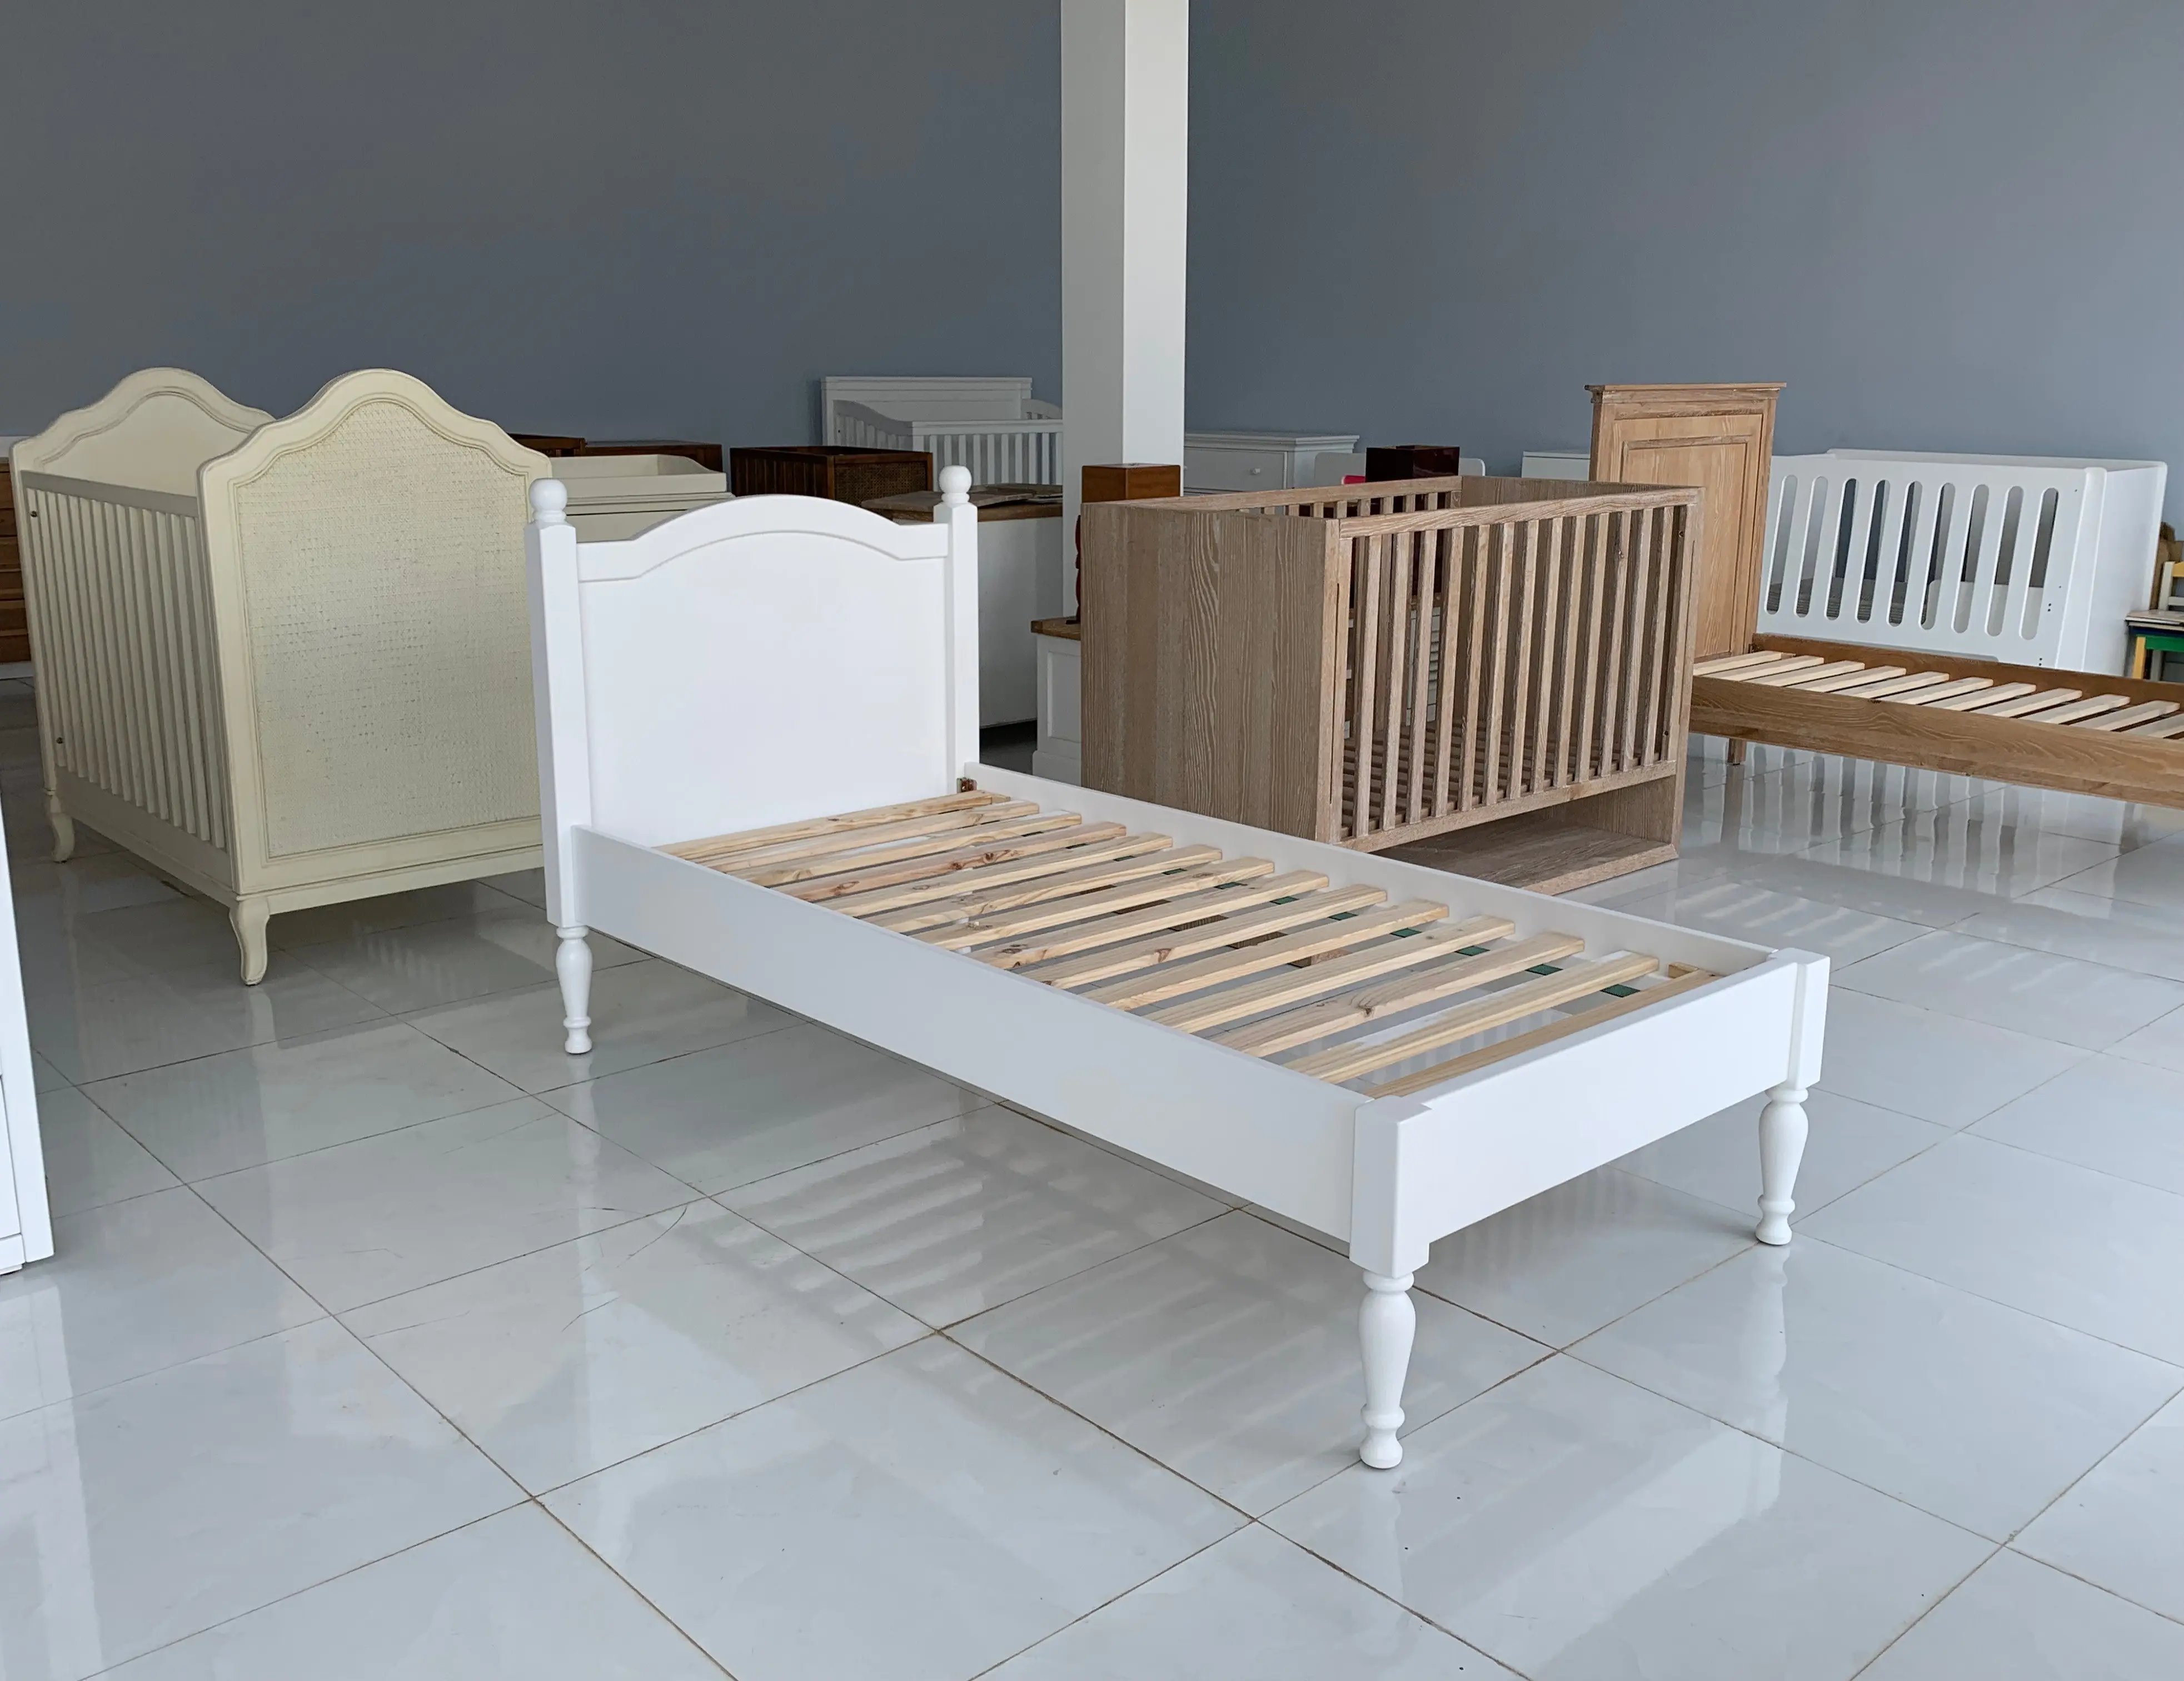 Mobili camera da letto moderna/bambini mobili camera da letto/letto Singolo biancheria da letto per i bambini